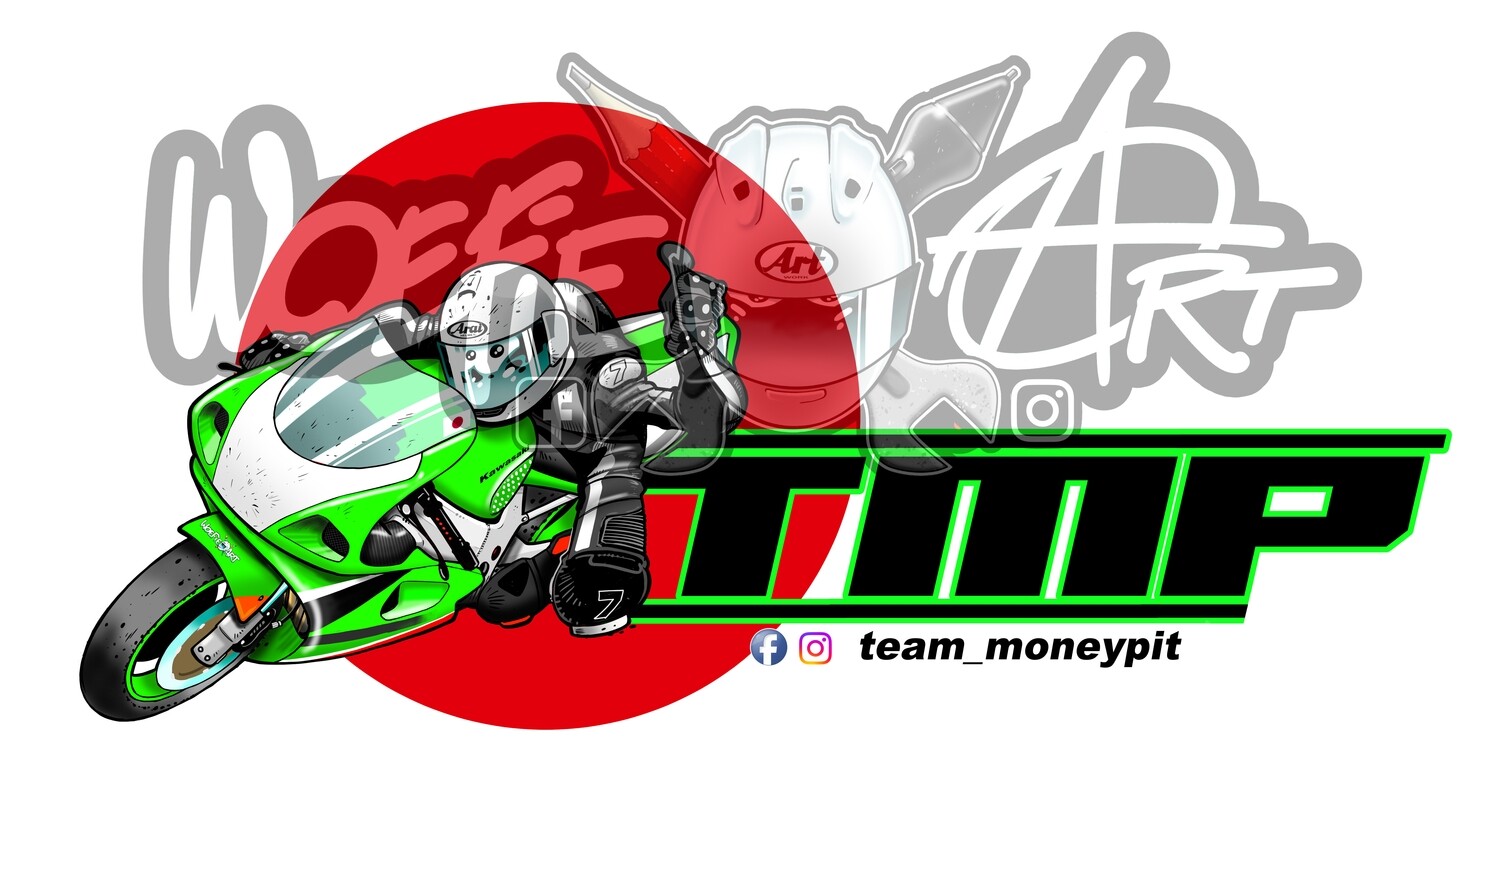 Team Moneypit sticker